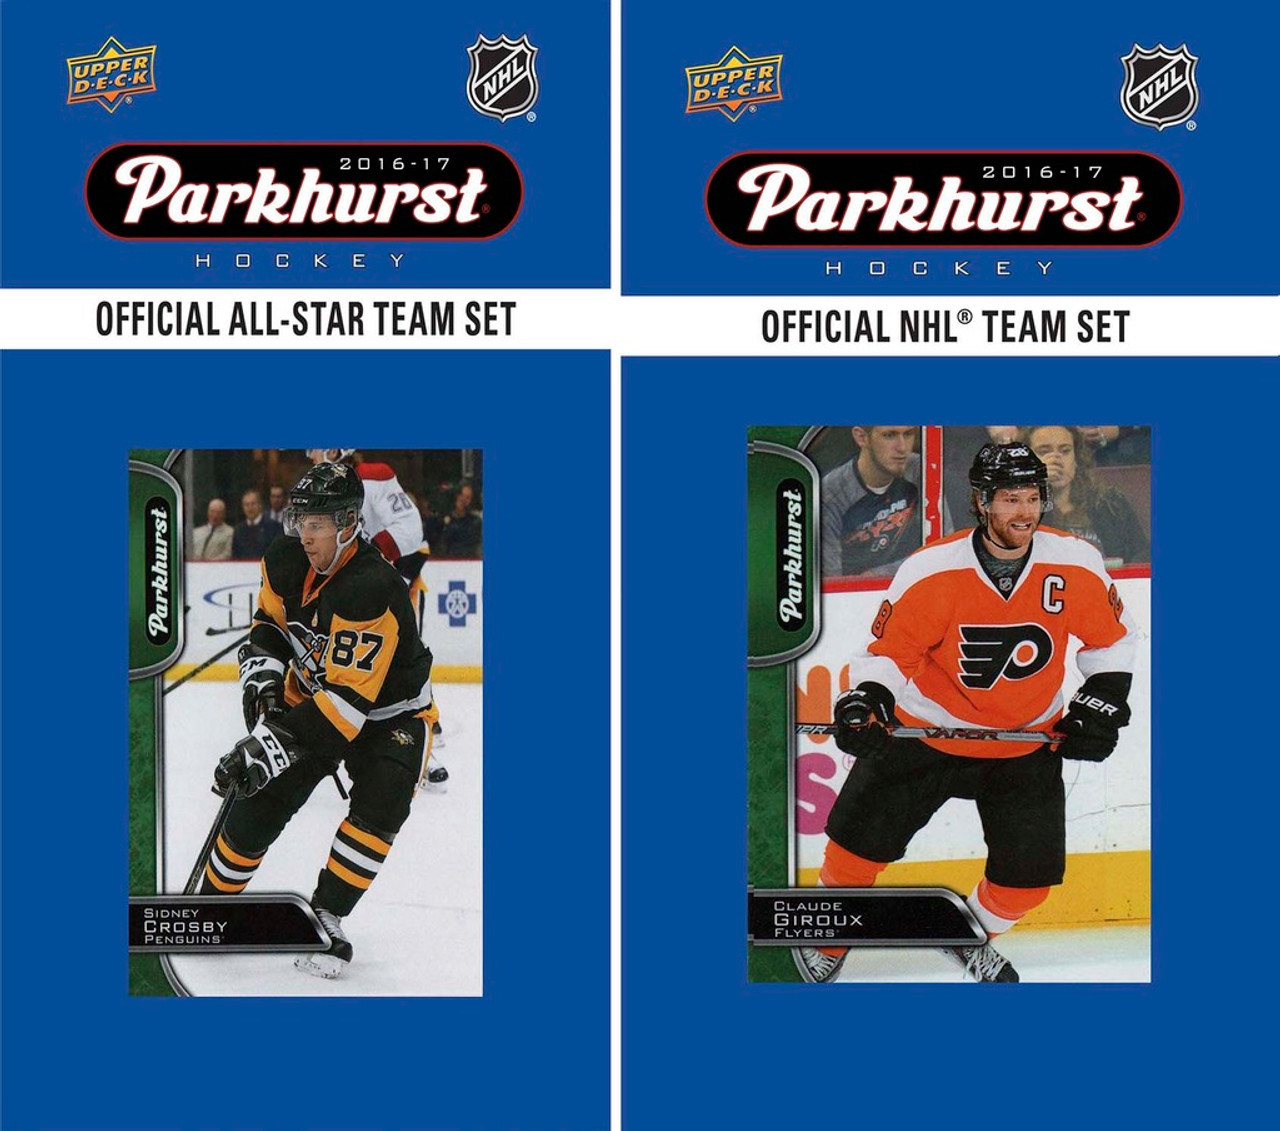 NHL Philadelphia Flyers 2016 Parkhurst Team Set and All-Star Set